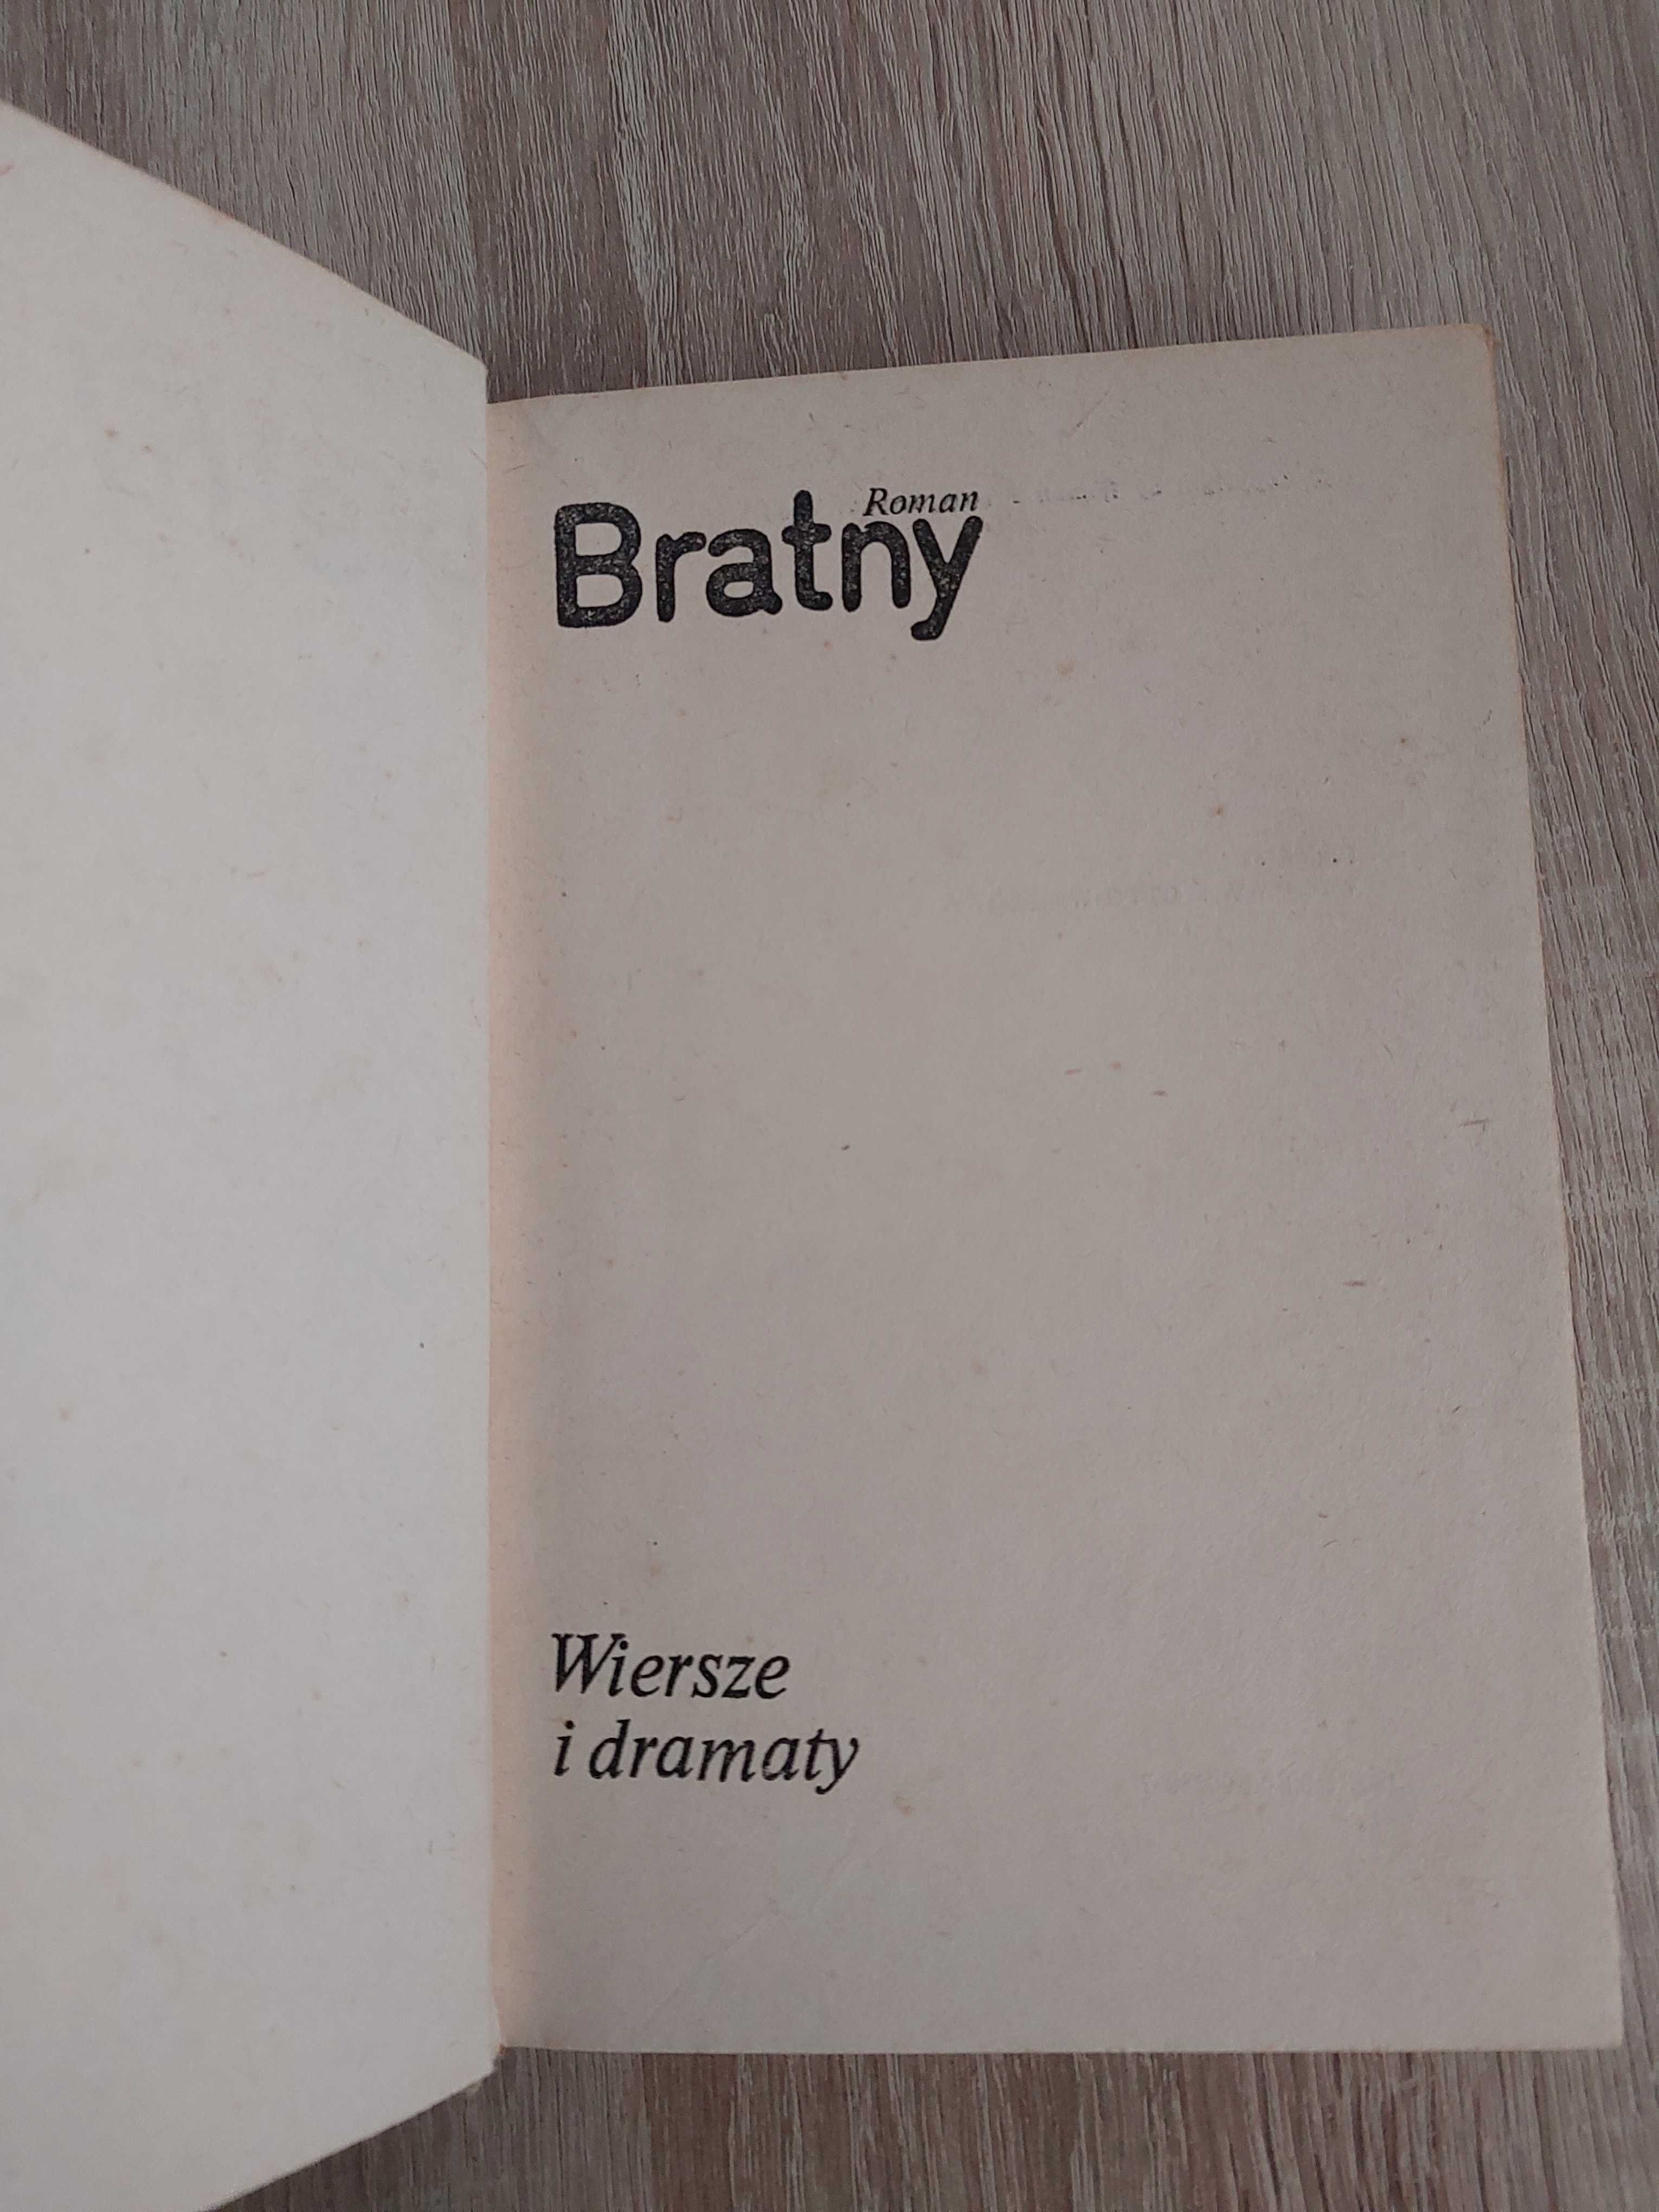 Roman Bratny Wiersze i dramaty